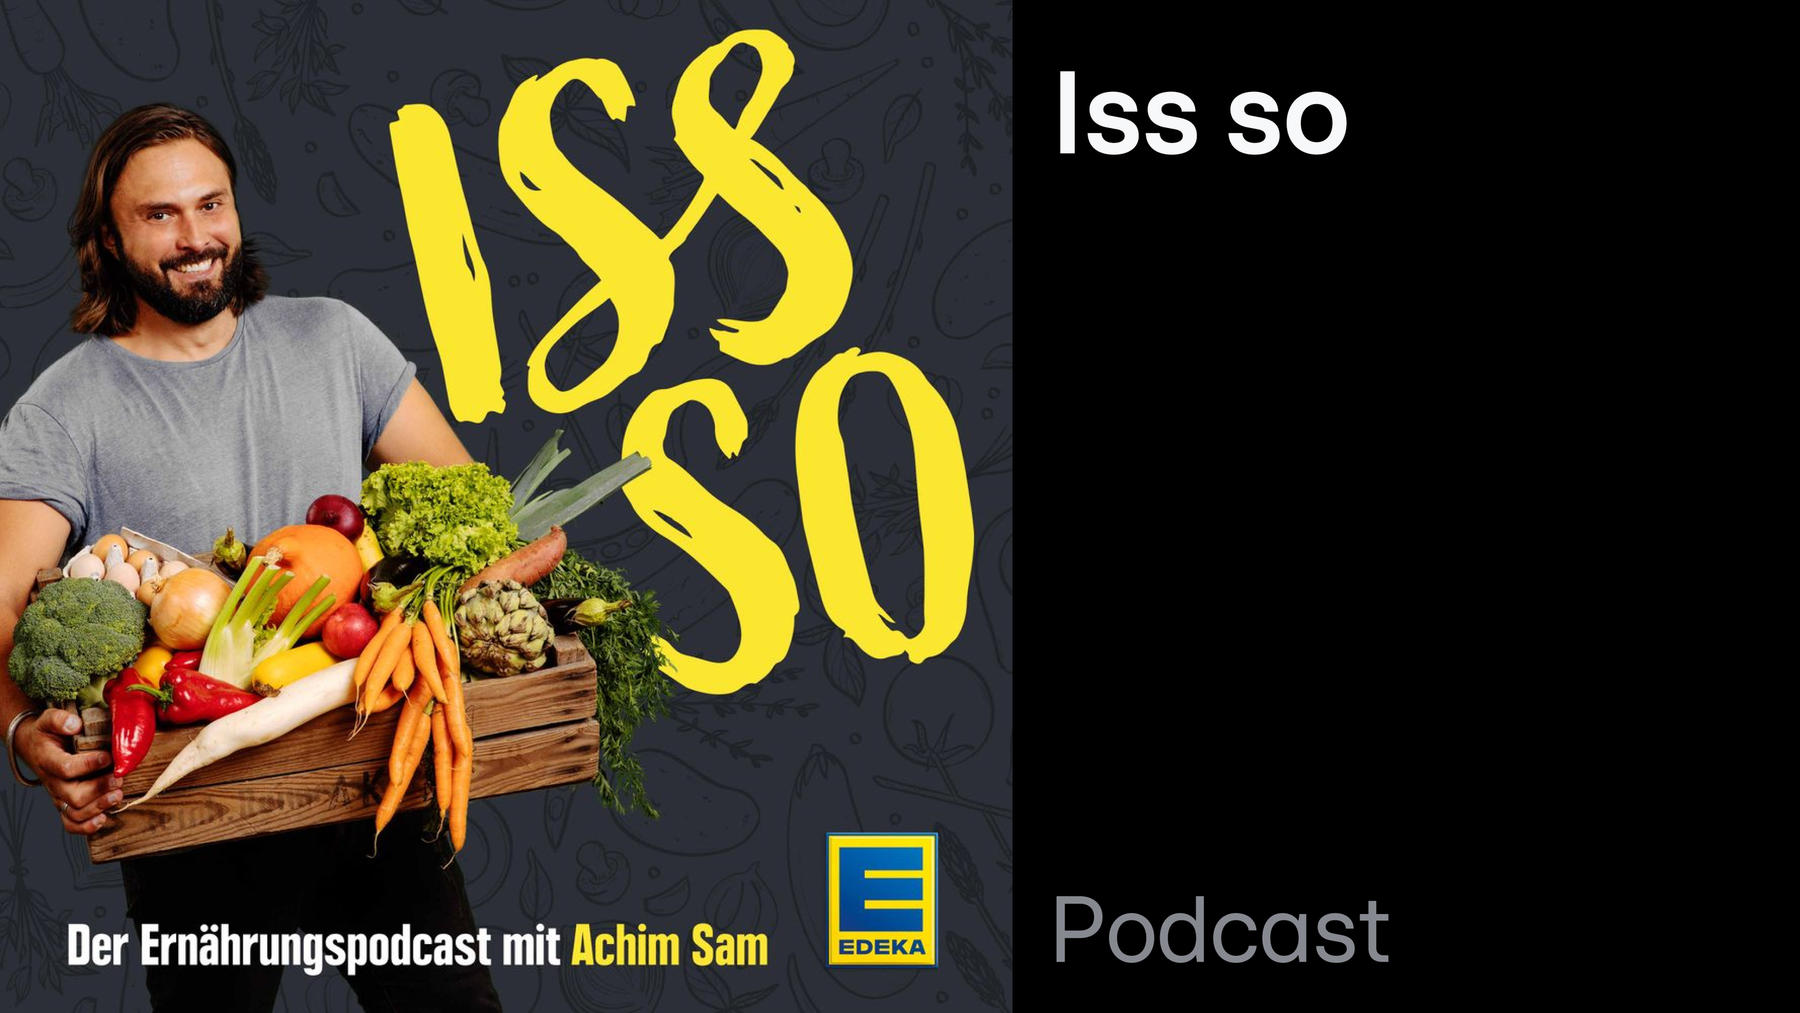 Podcast: ISS SO – der Ernährungspodcast mit Achim Sam